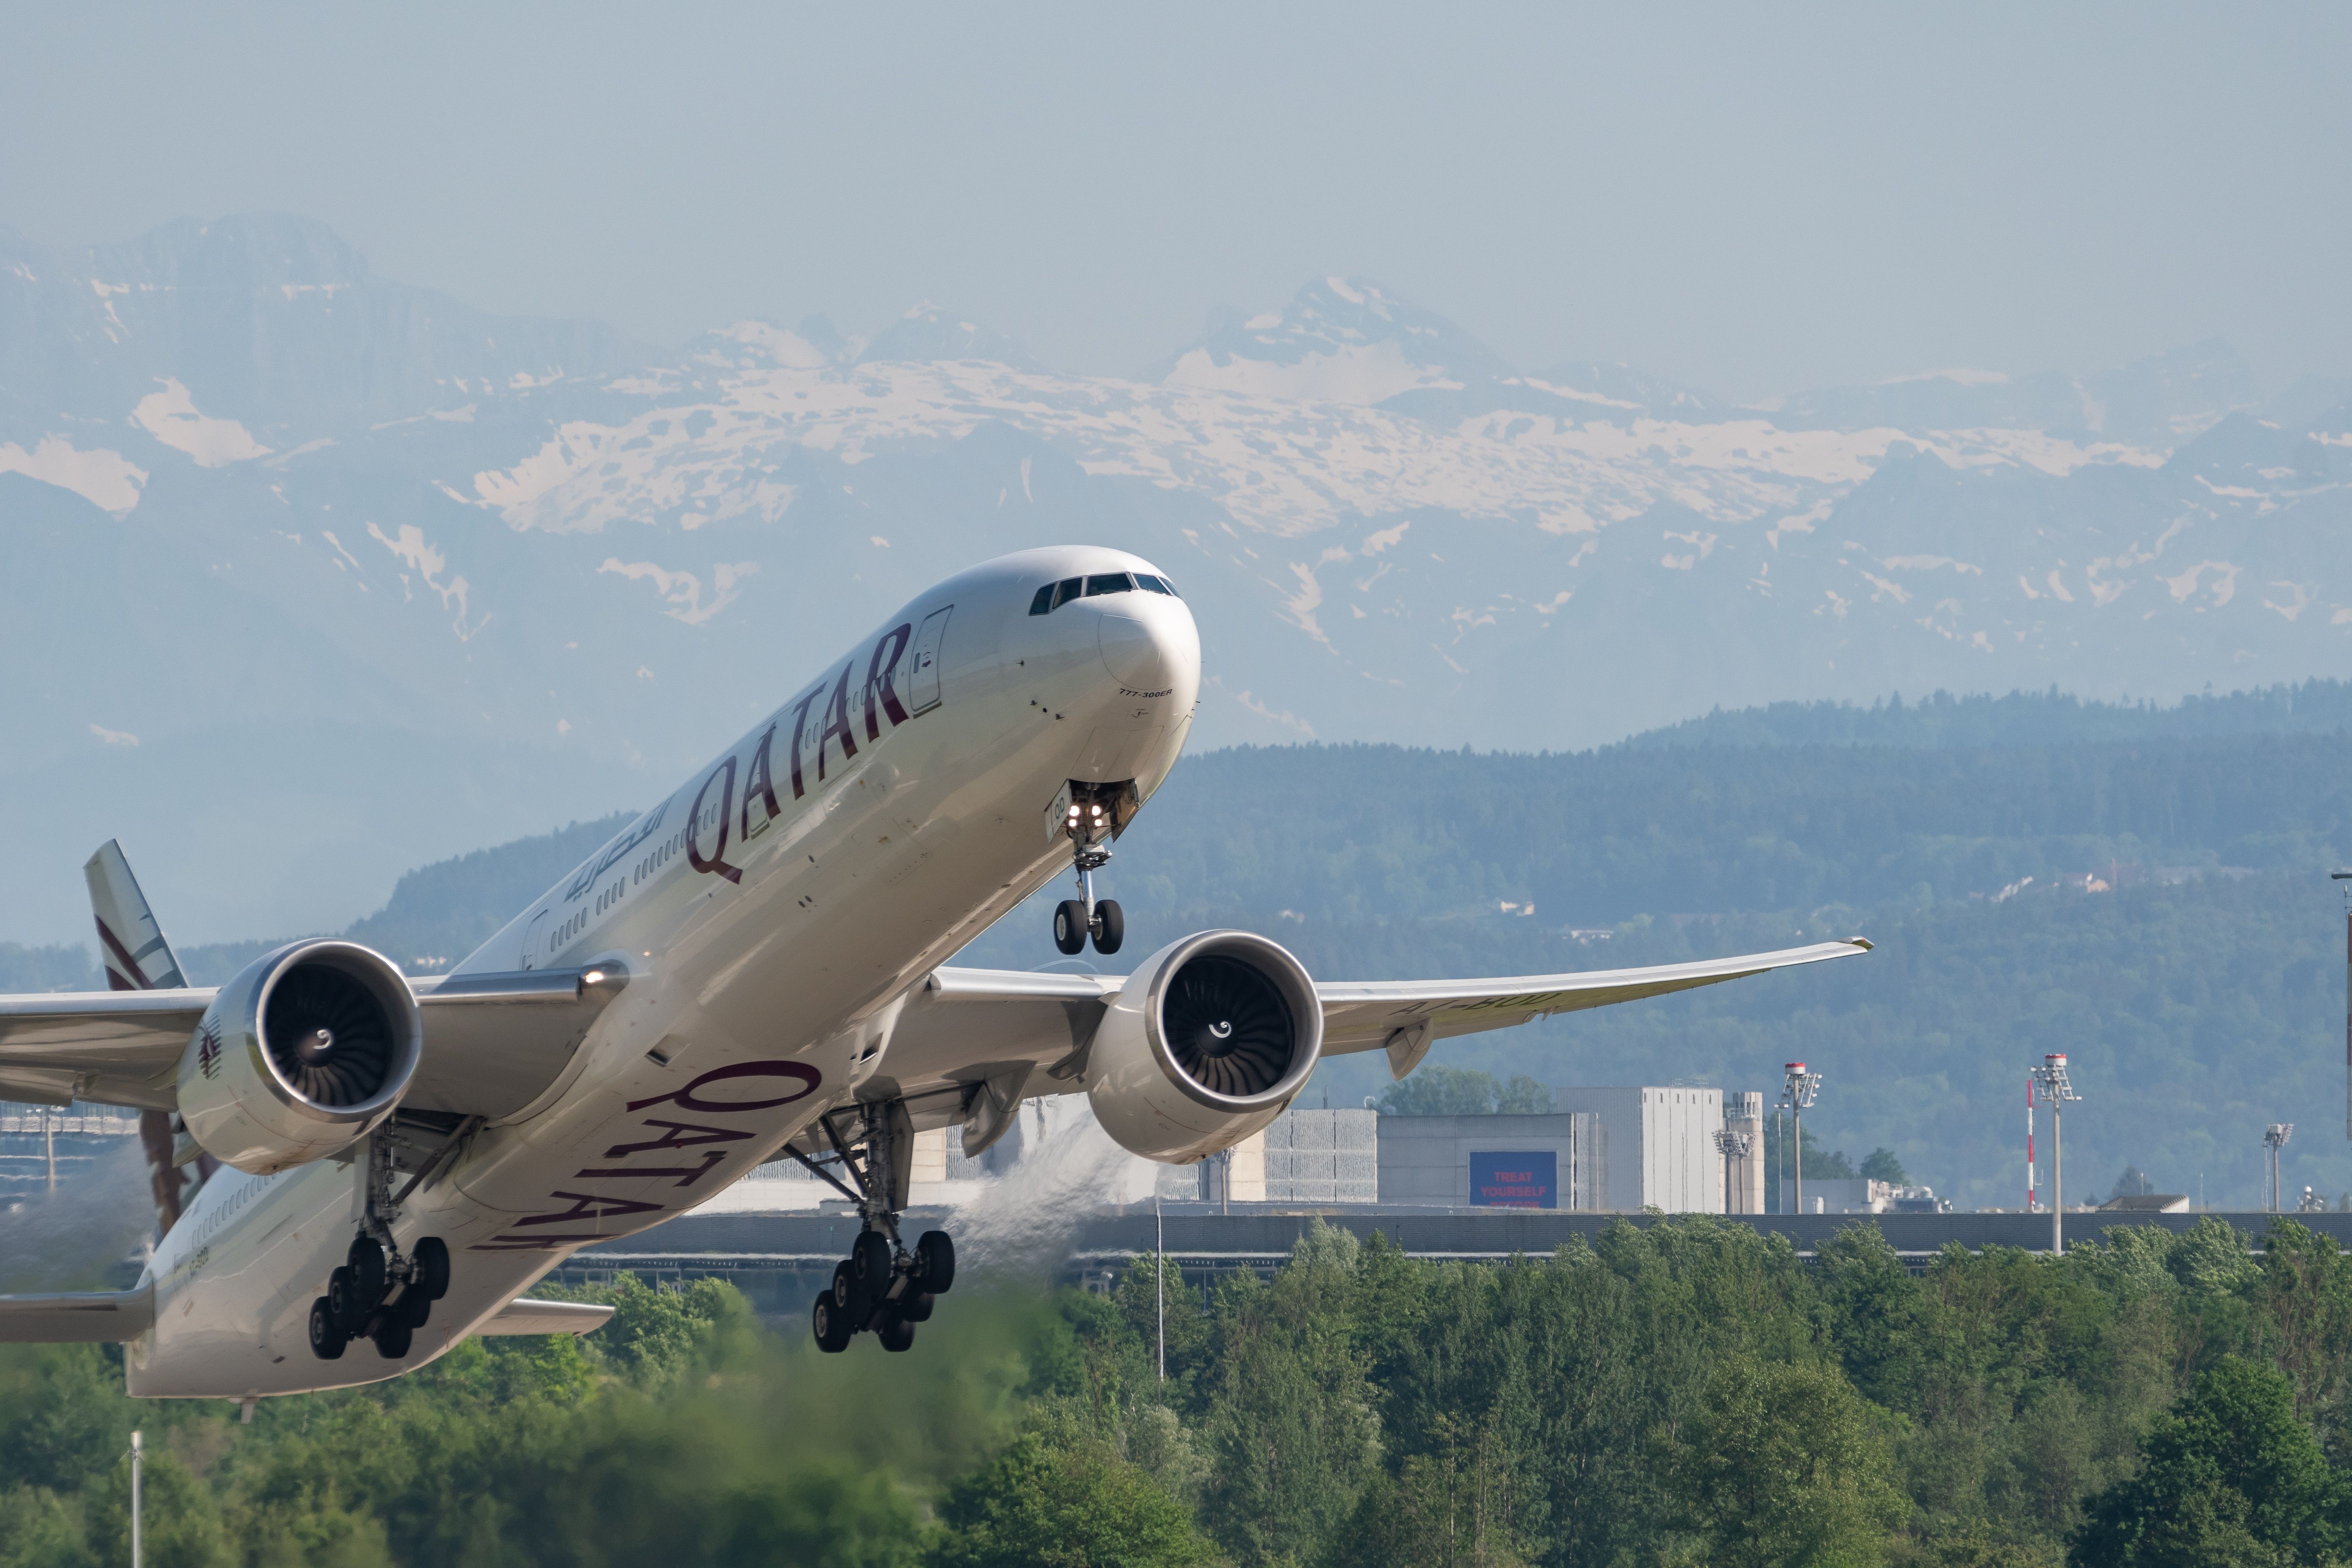 Qatar Airways Boeing 777 taking off from Switzerland.